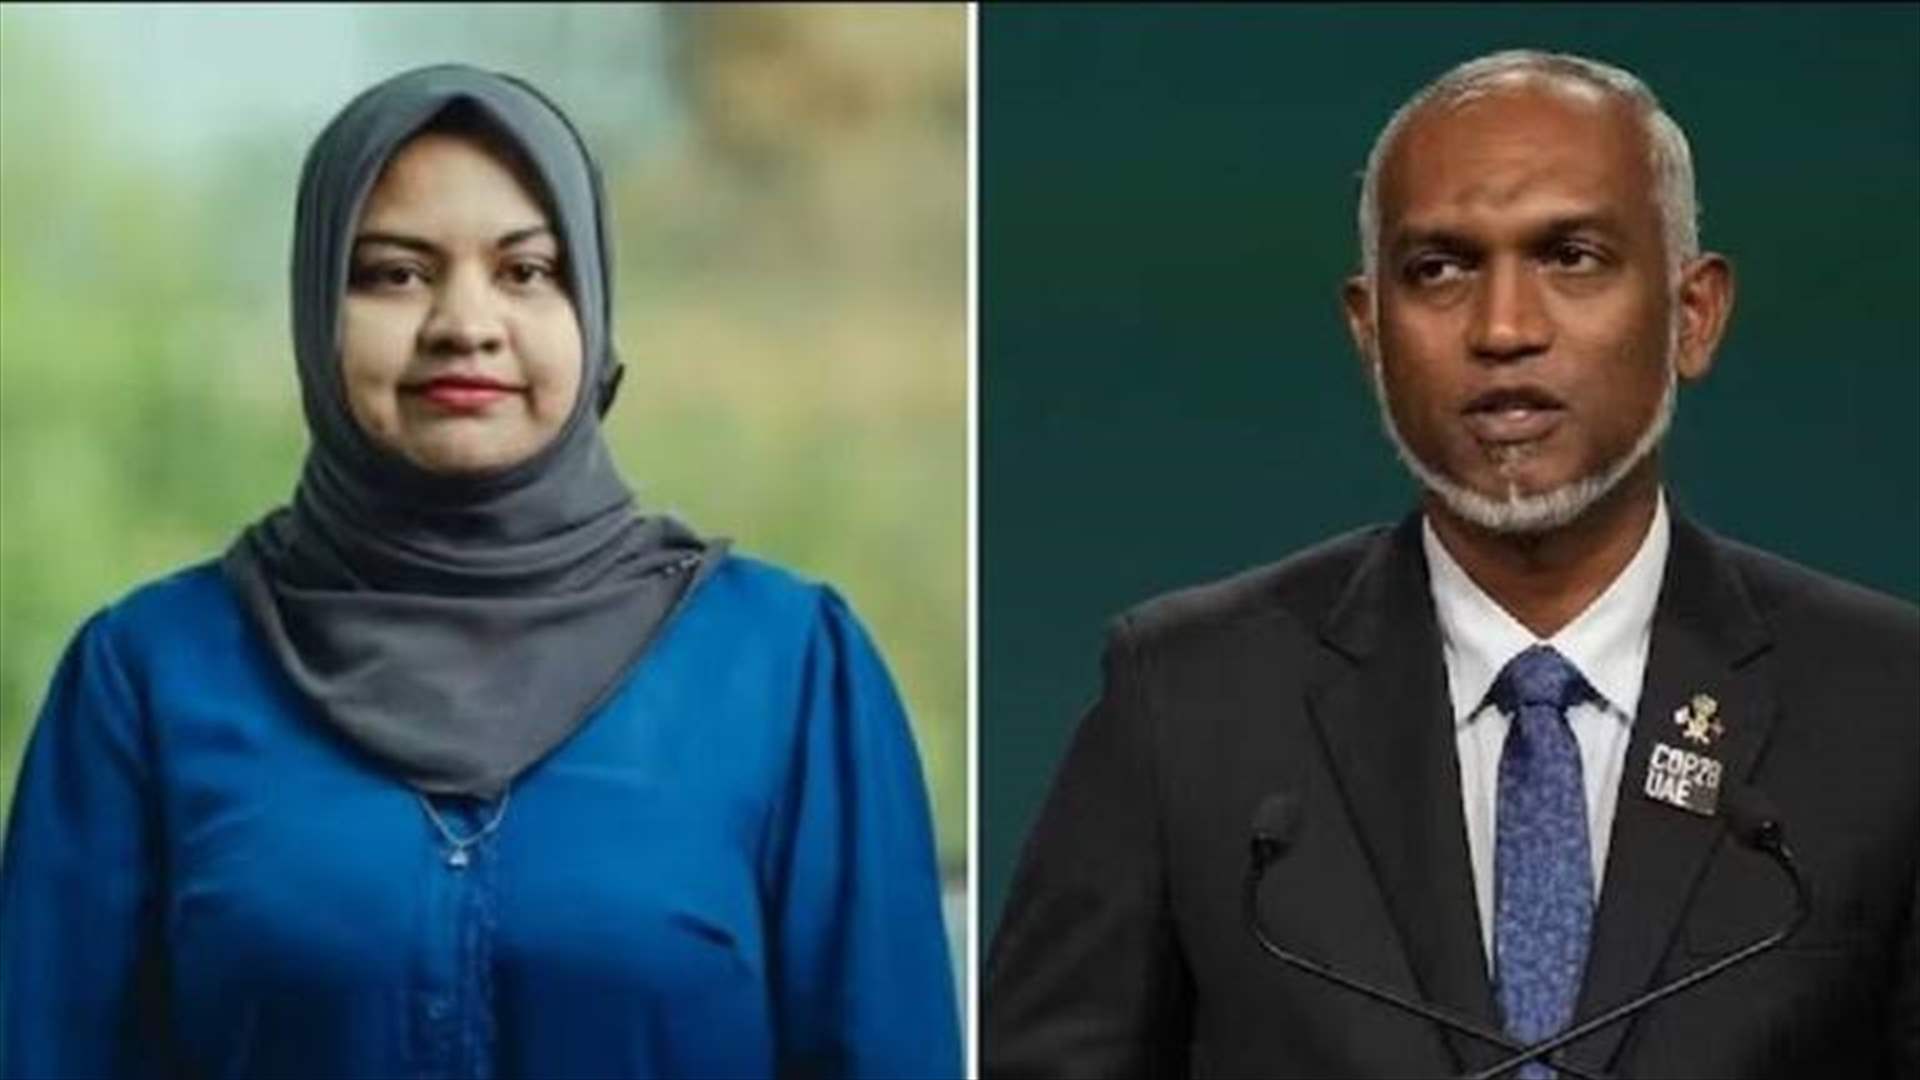 اعتقال وزيرة البيئة في جزر المالديف... ما حقيقة ممارستها السحر الأسود ضد رئيس البلاد؟